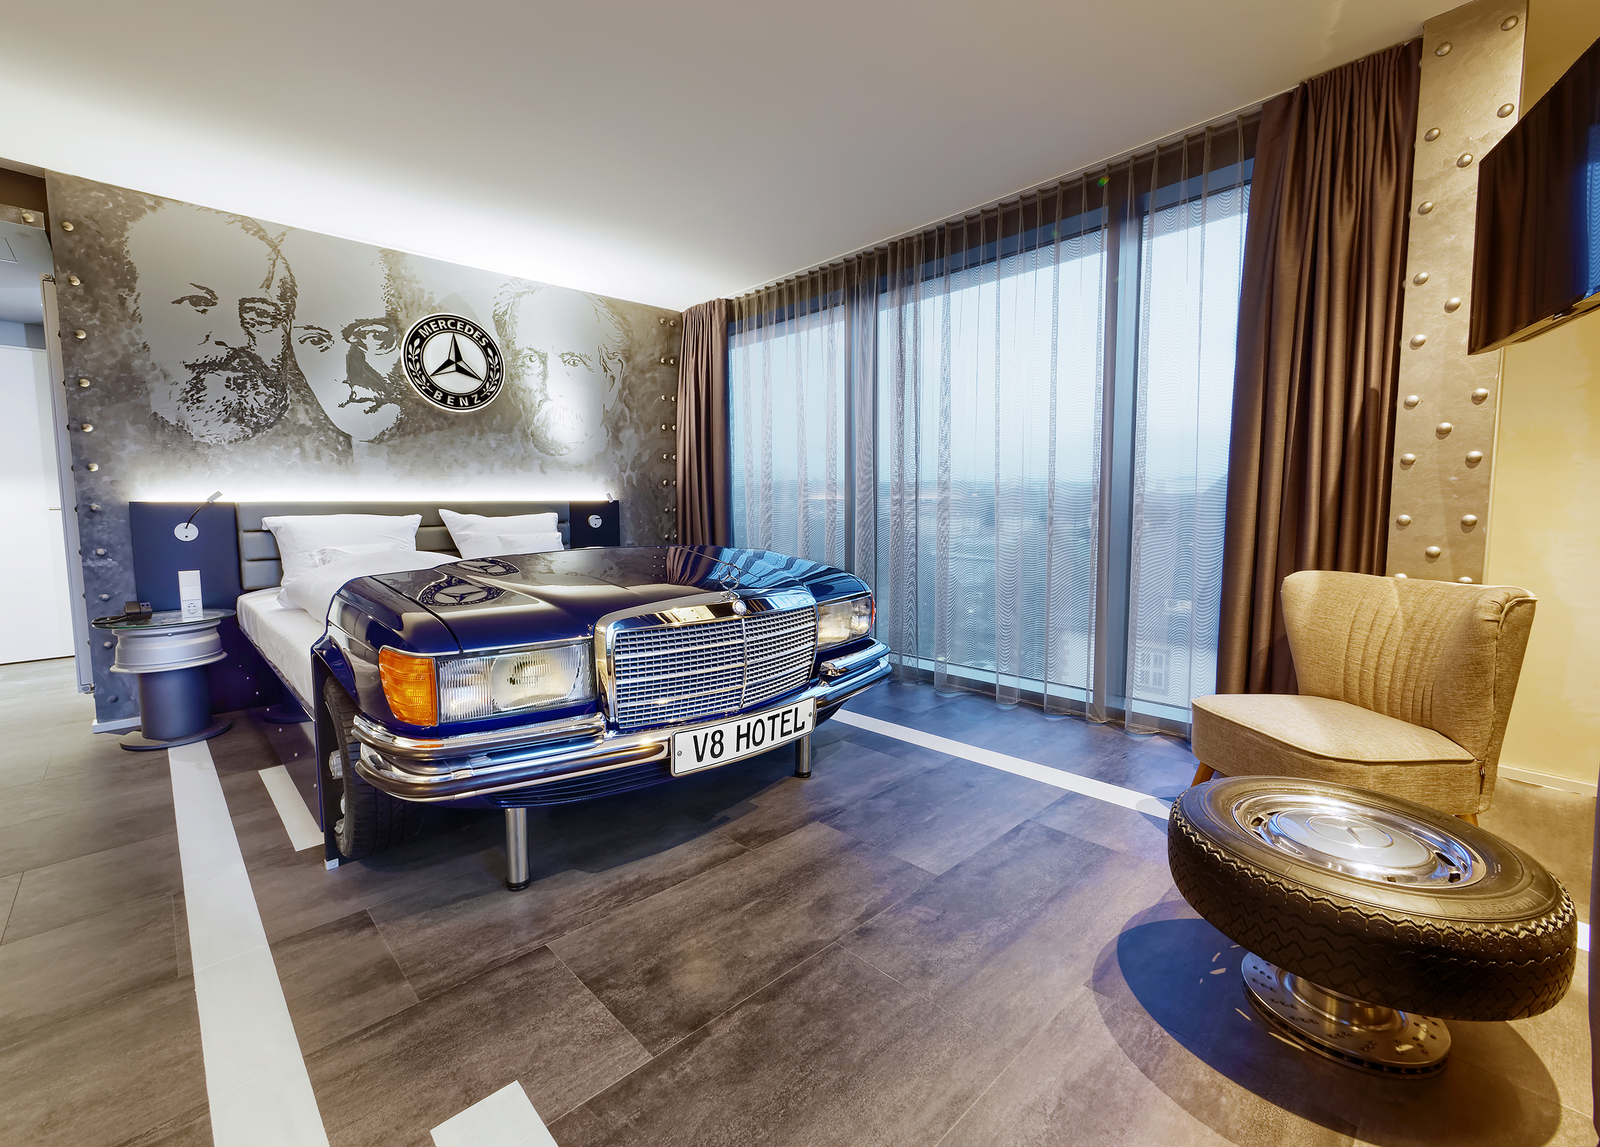 Blaues Mercedes Autobett gegenüber eines Sessels und Tischs in Form eines Autoreifens im Autozimmer des V8 Hotels.